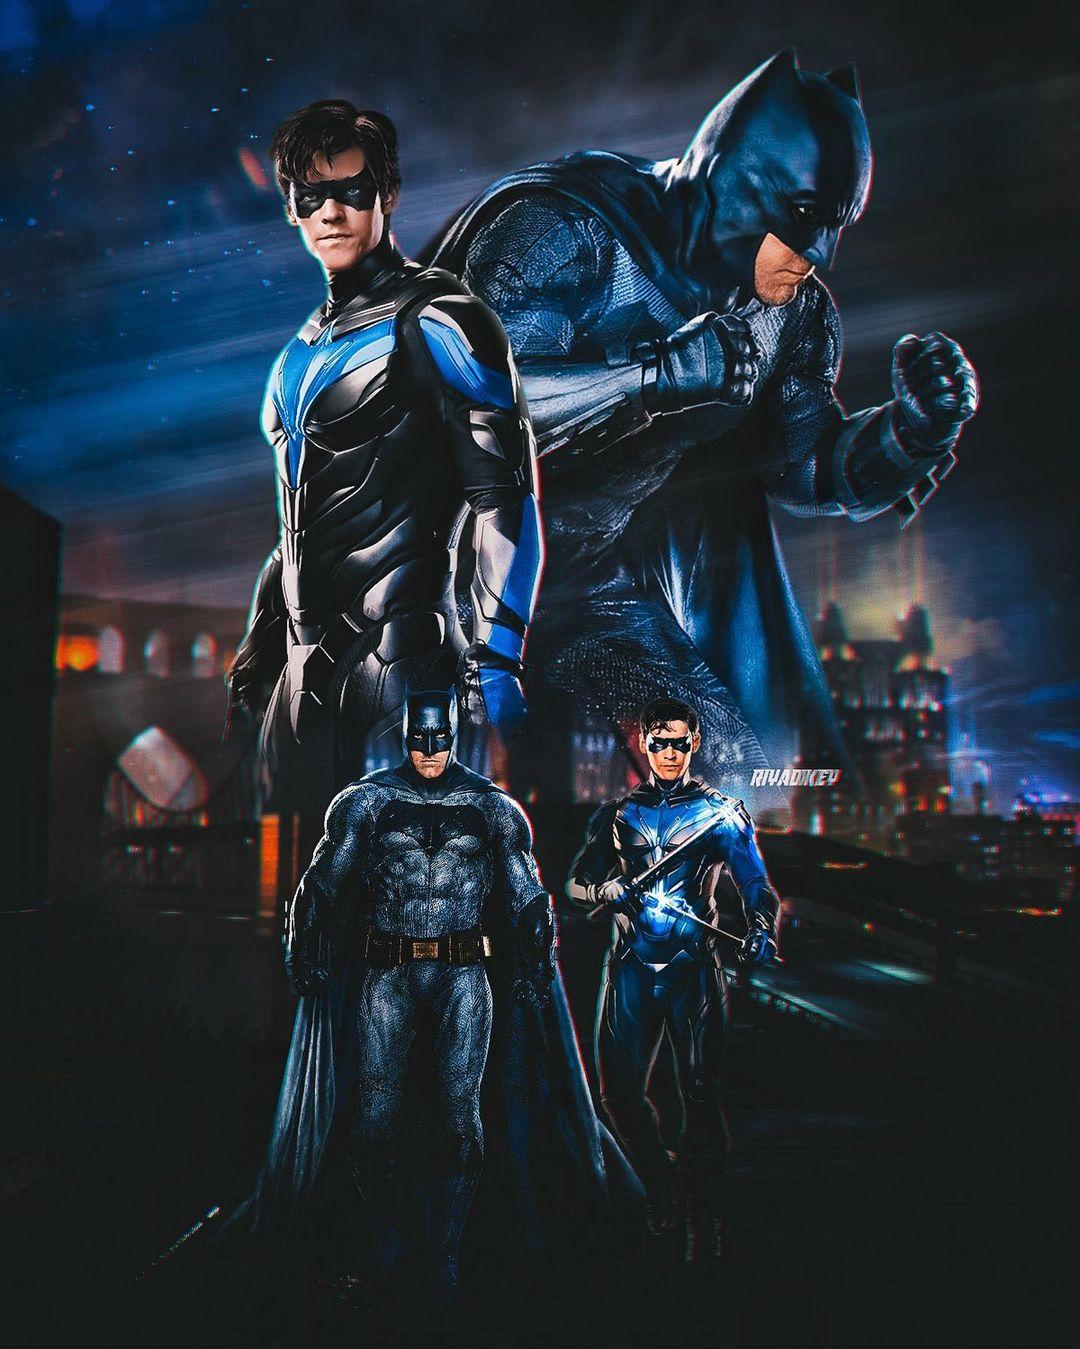 Batman Nightwing Fan Poster By Ryadkey Tytorthebarbarian On